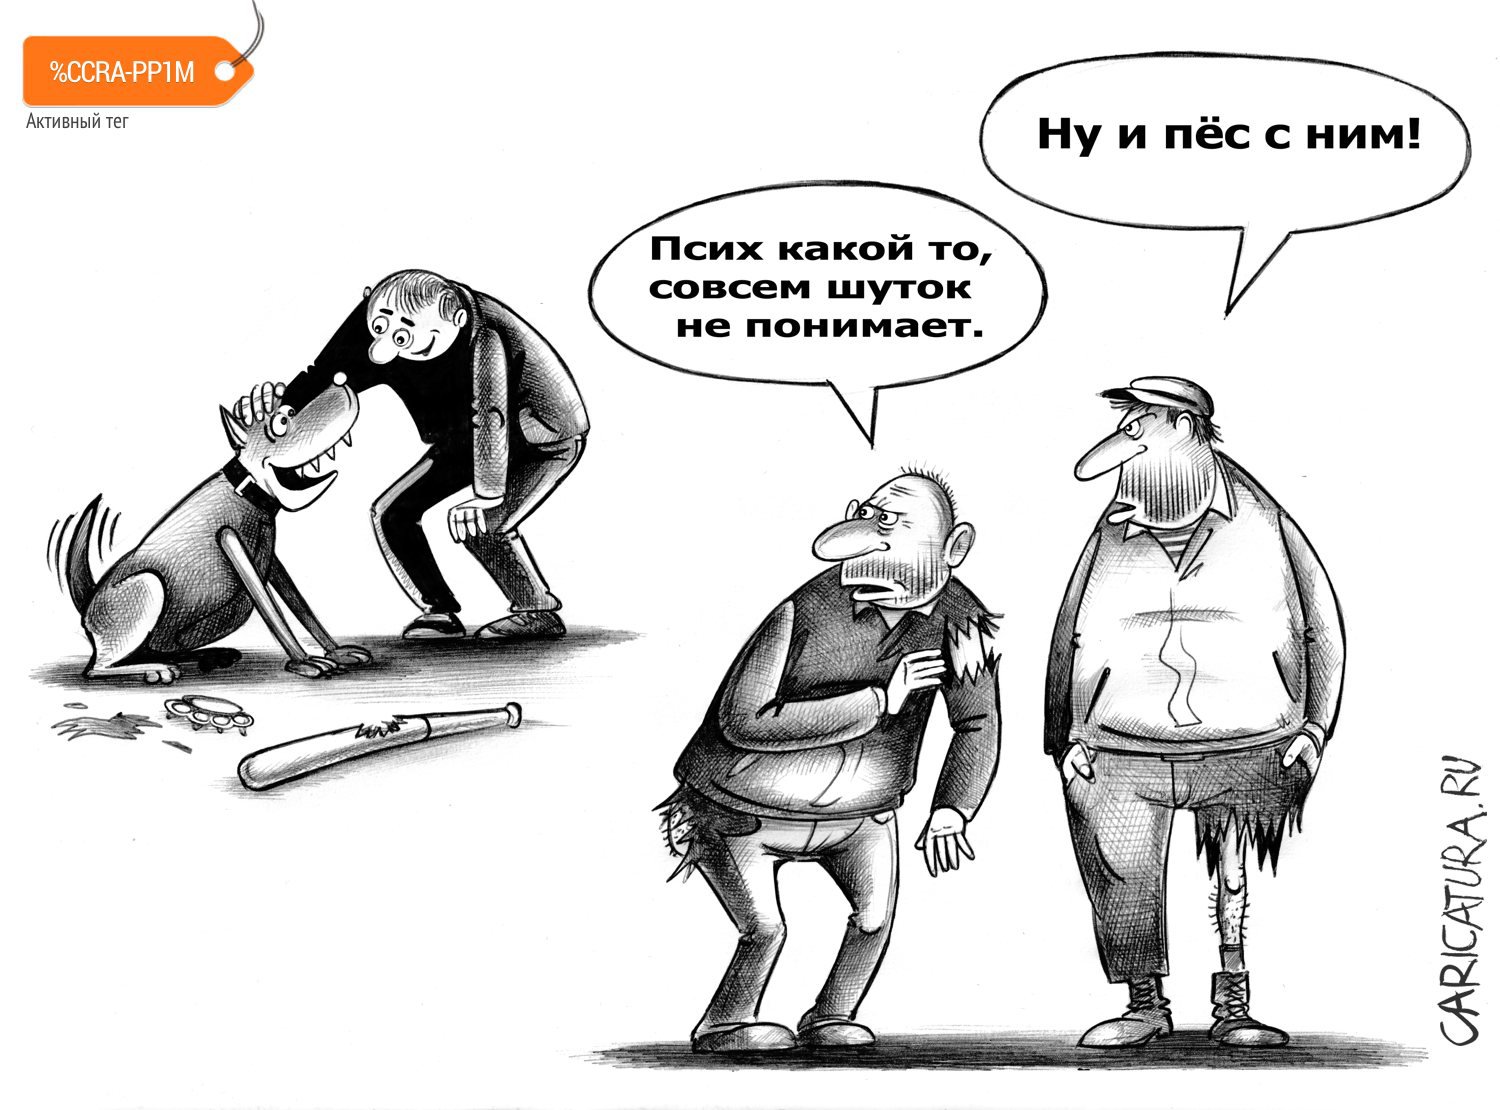 Карикатура "Шуток не понимает", Сергей Корсун